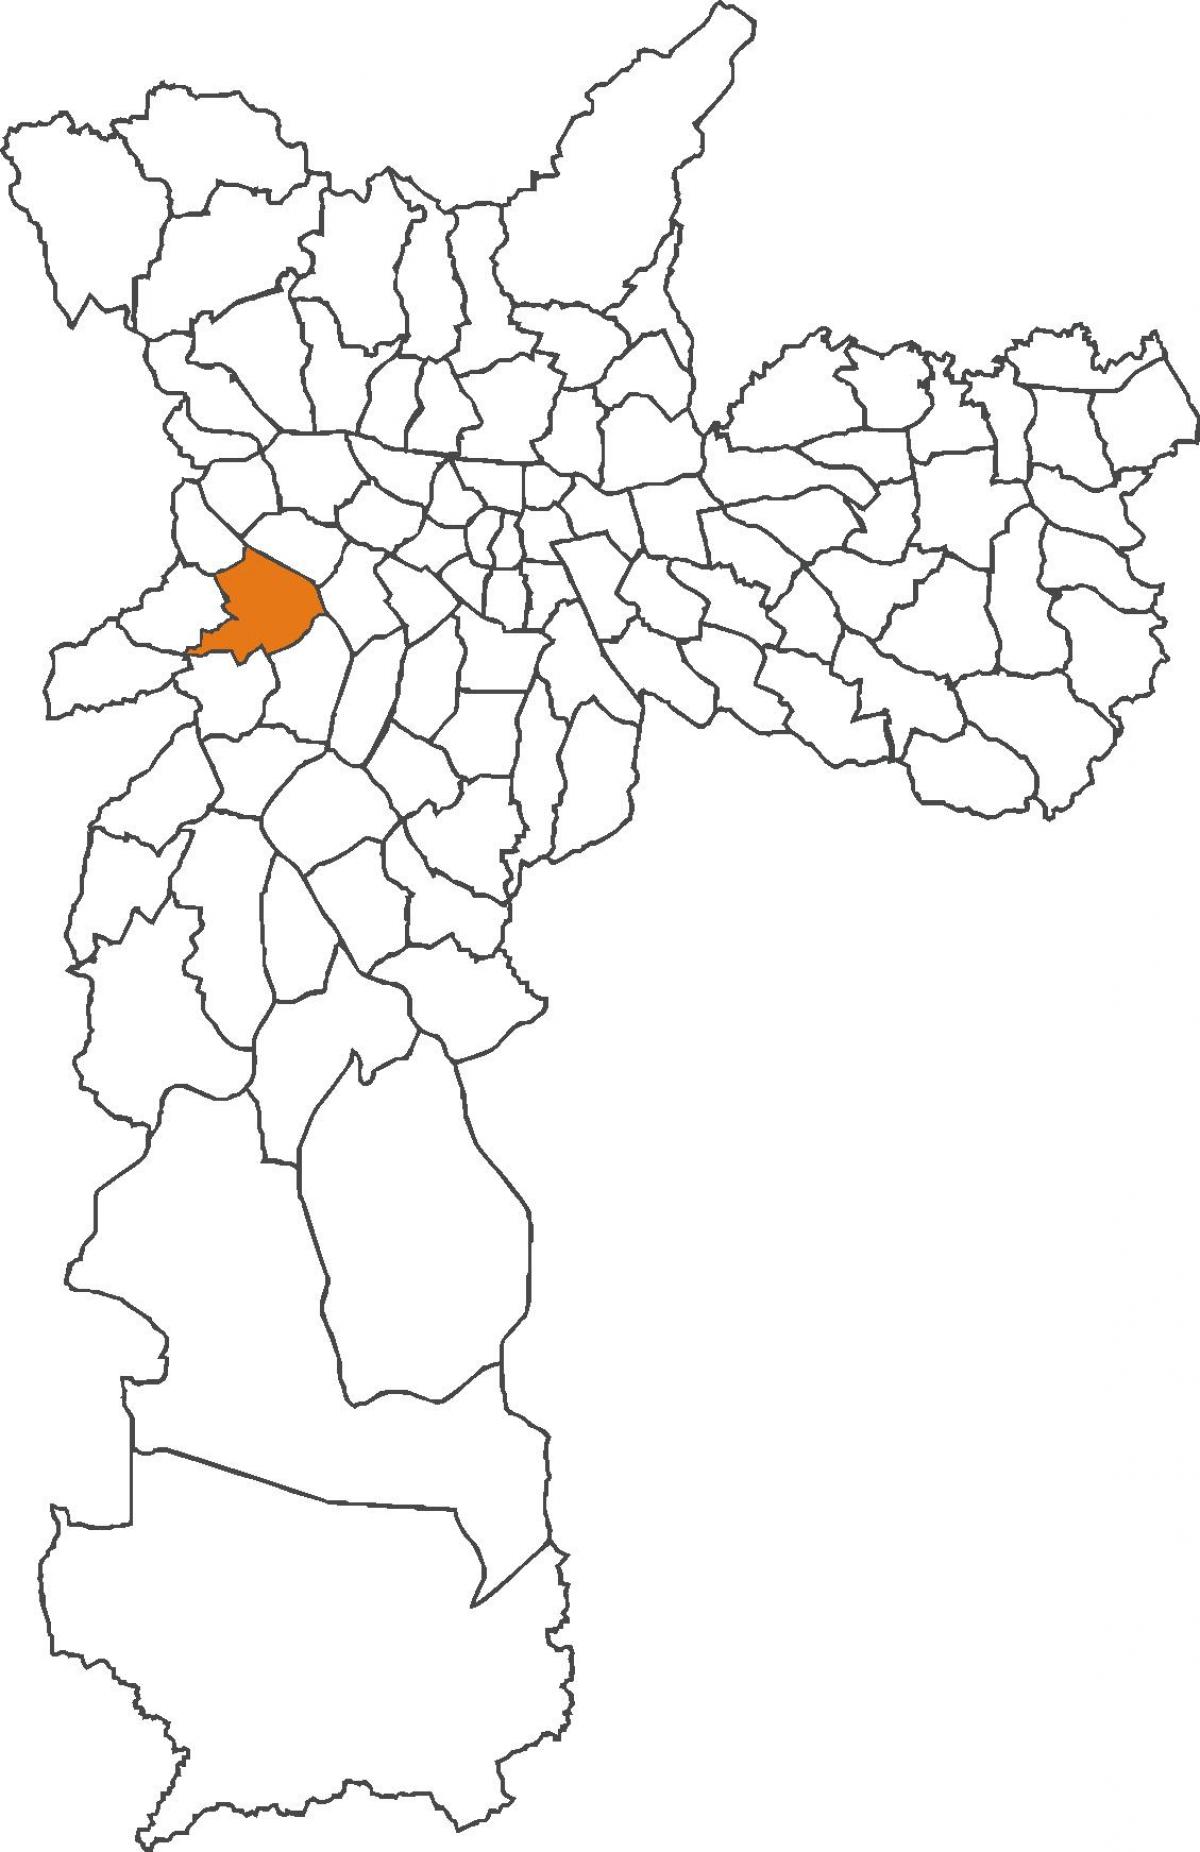 মানচিত্র Butantã জেলা